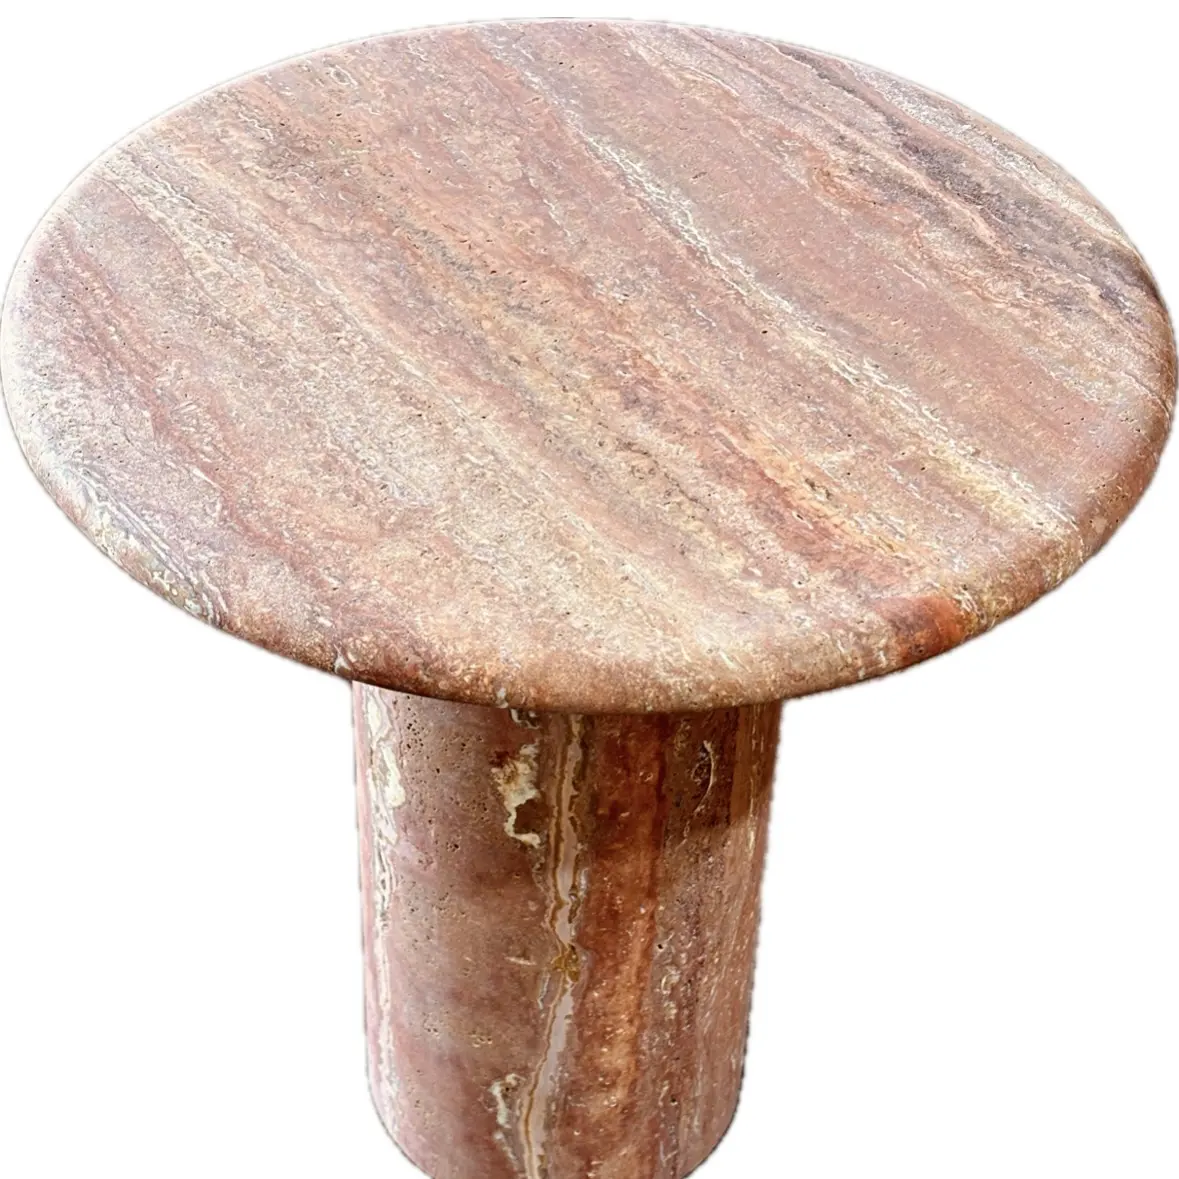 Personalizzato rosso giallo interno travertino rotondo tavolino da pranzo tavolo naturale pietra cremosa marmo mobili